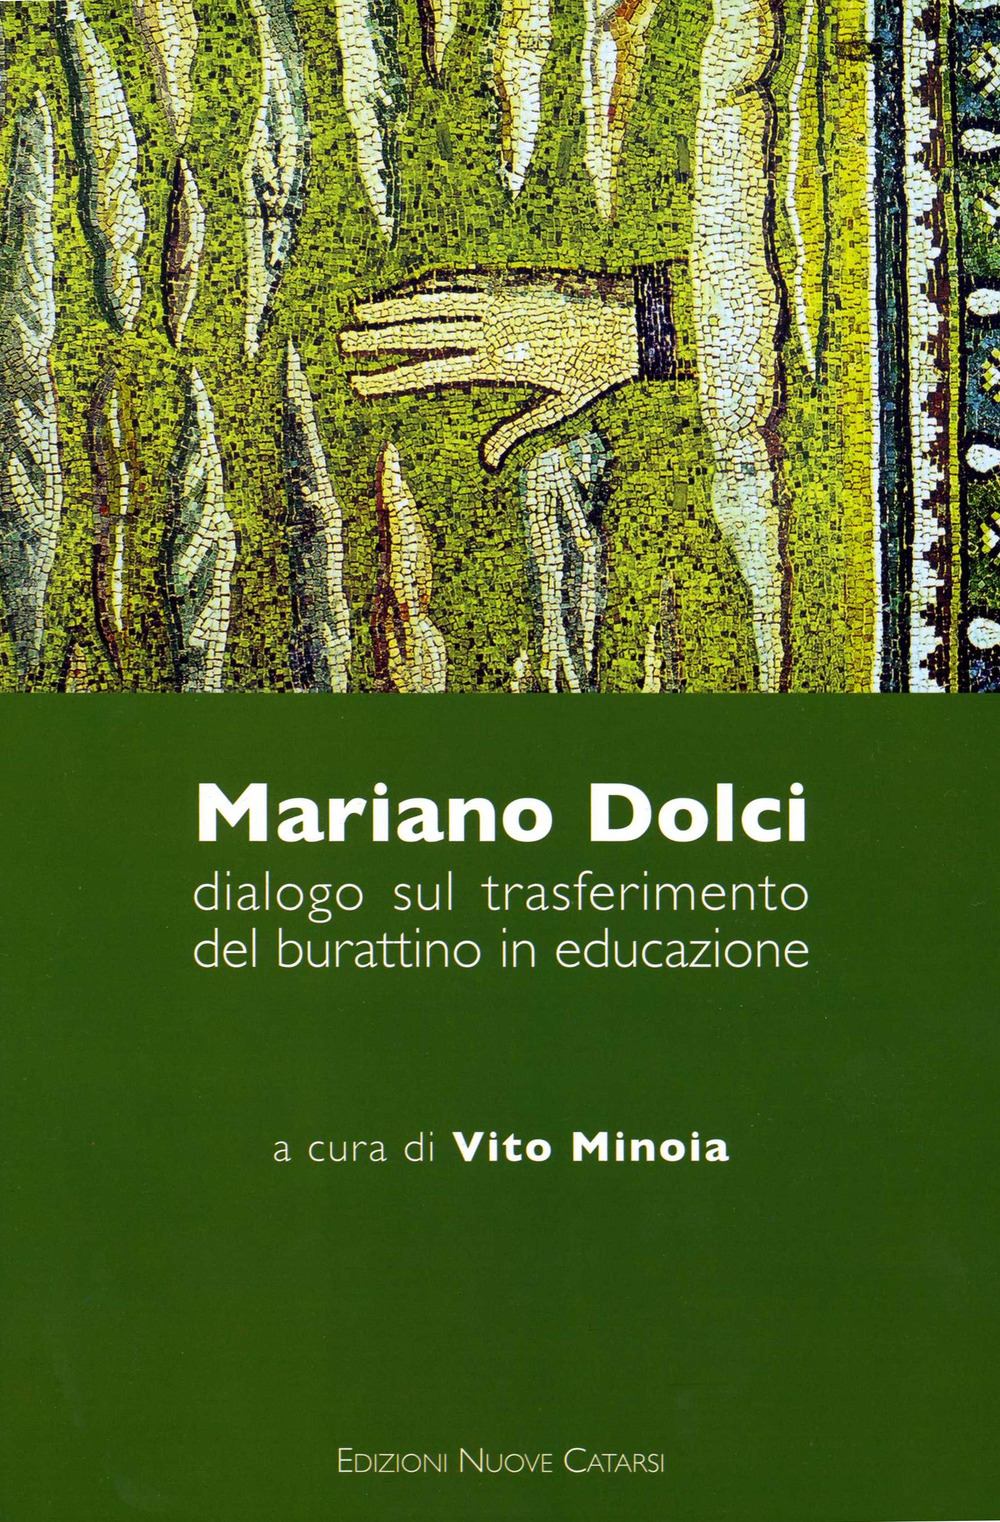 Mariano Dolci. Dialogo sul trasferimento del burattino in educazione